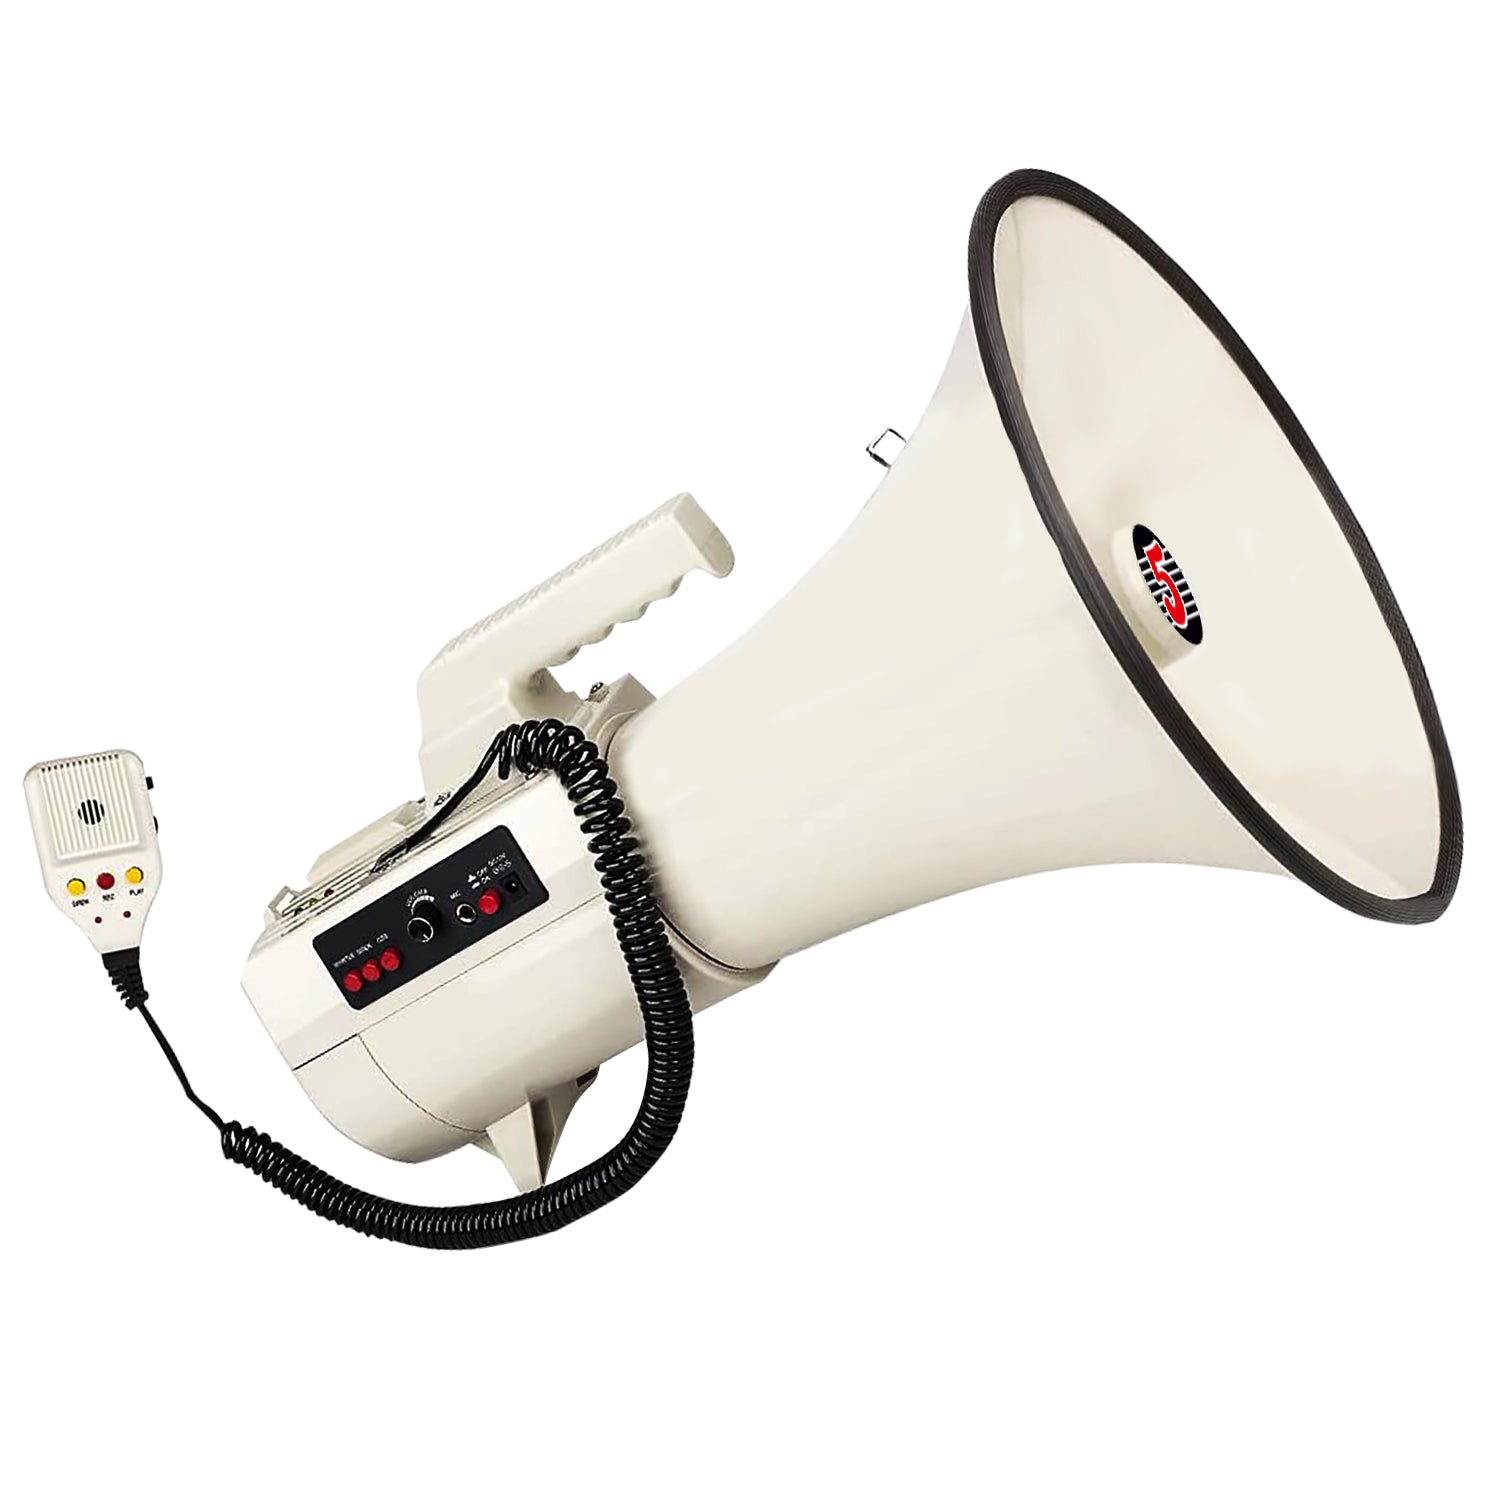 5Core Megaphone 100W Power PA Bullhorn 2000 Yards Range w Siren & USB Bull Horn Loud Speaker